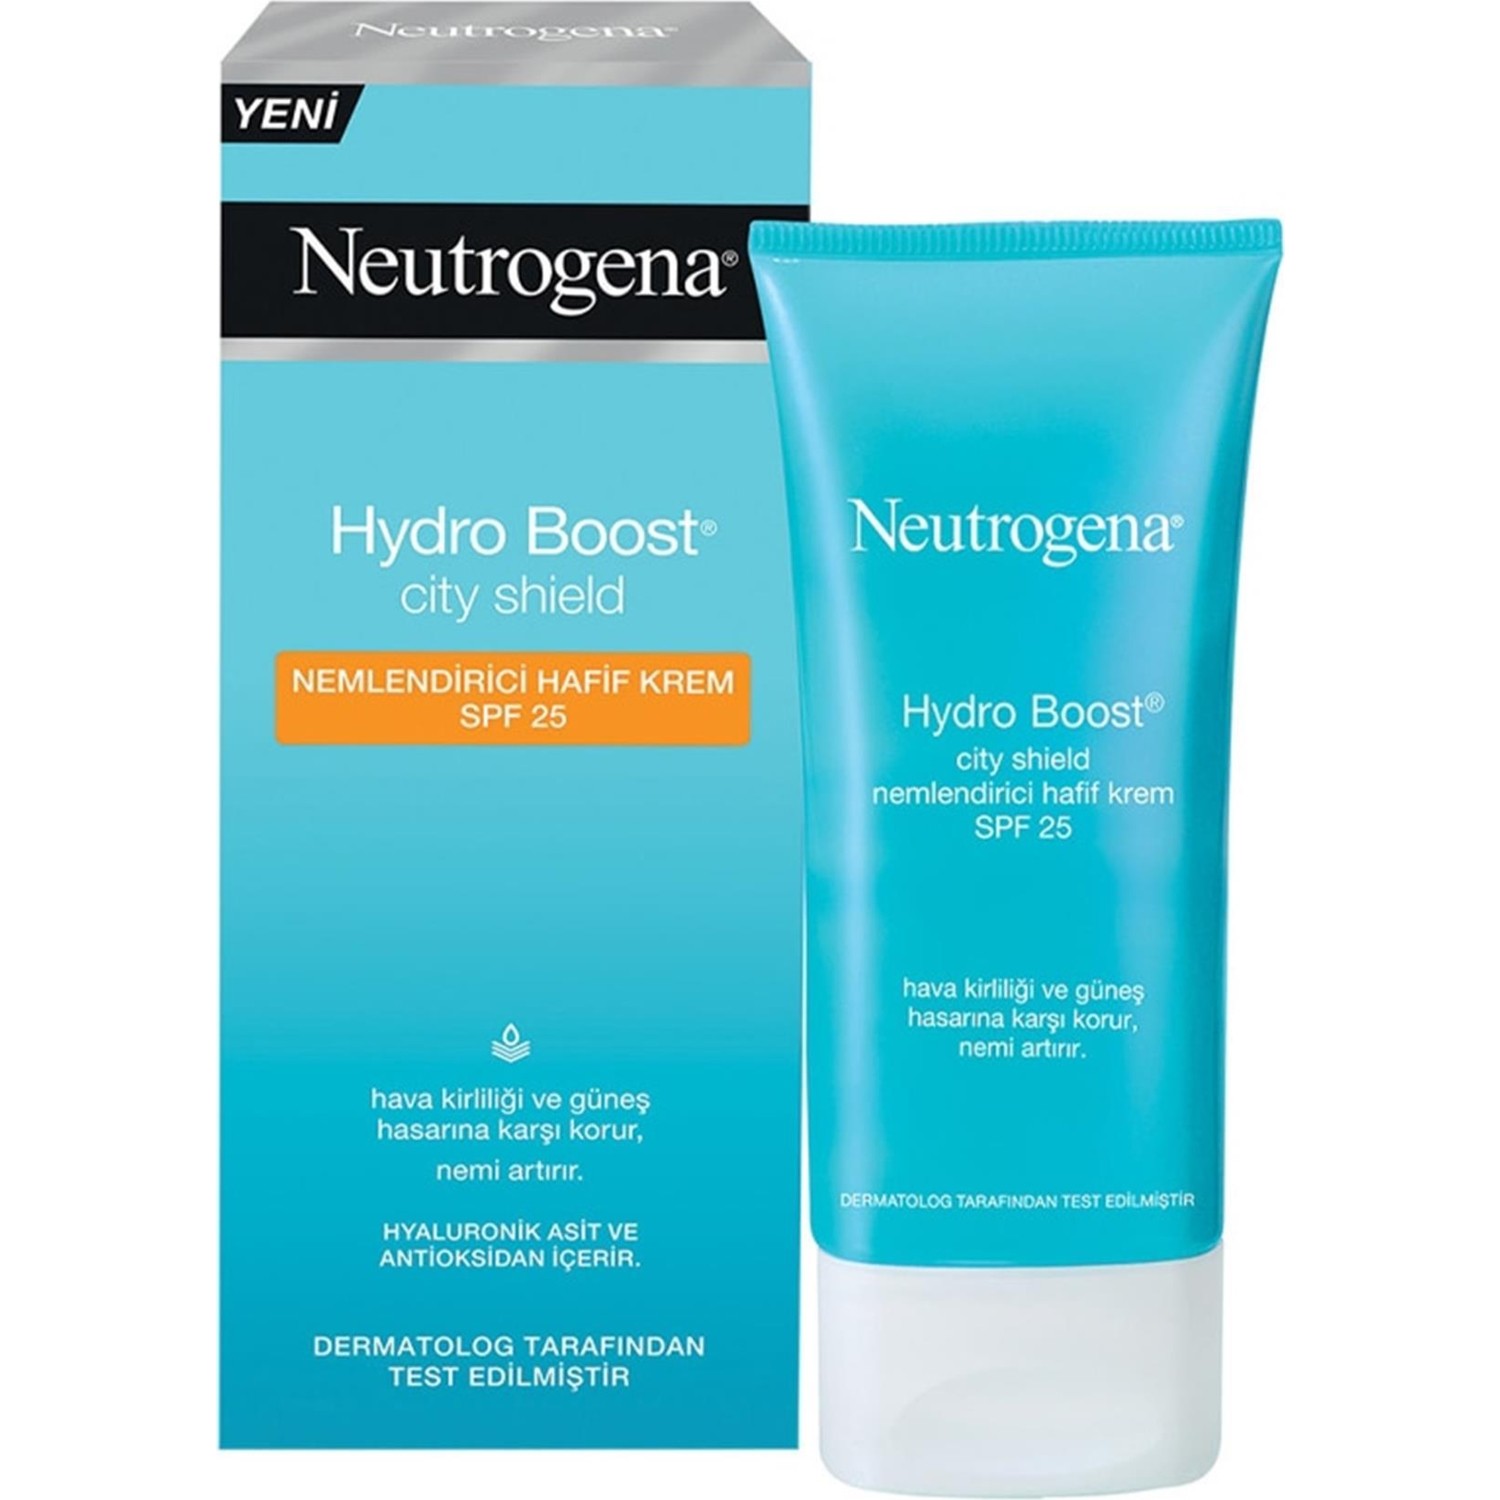 Увлажняющий крем Neutrogena Hydro Boost SPF25, 50 мл крем neutrogena hydro boost spf25 увлажняющий 2 упаковки по 50 мл